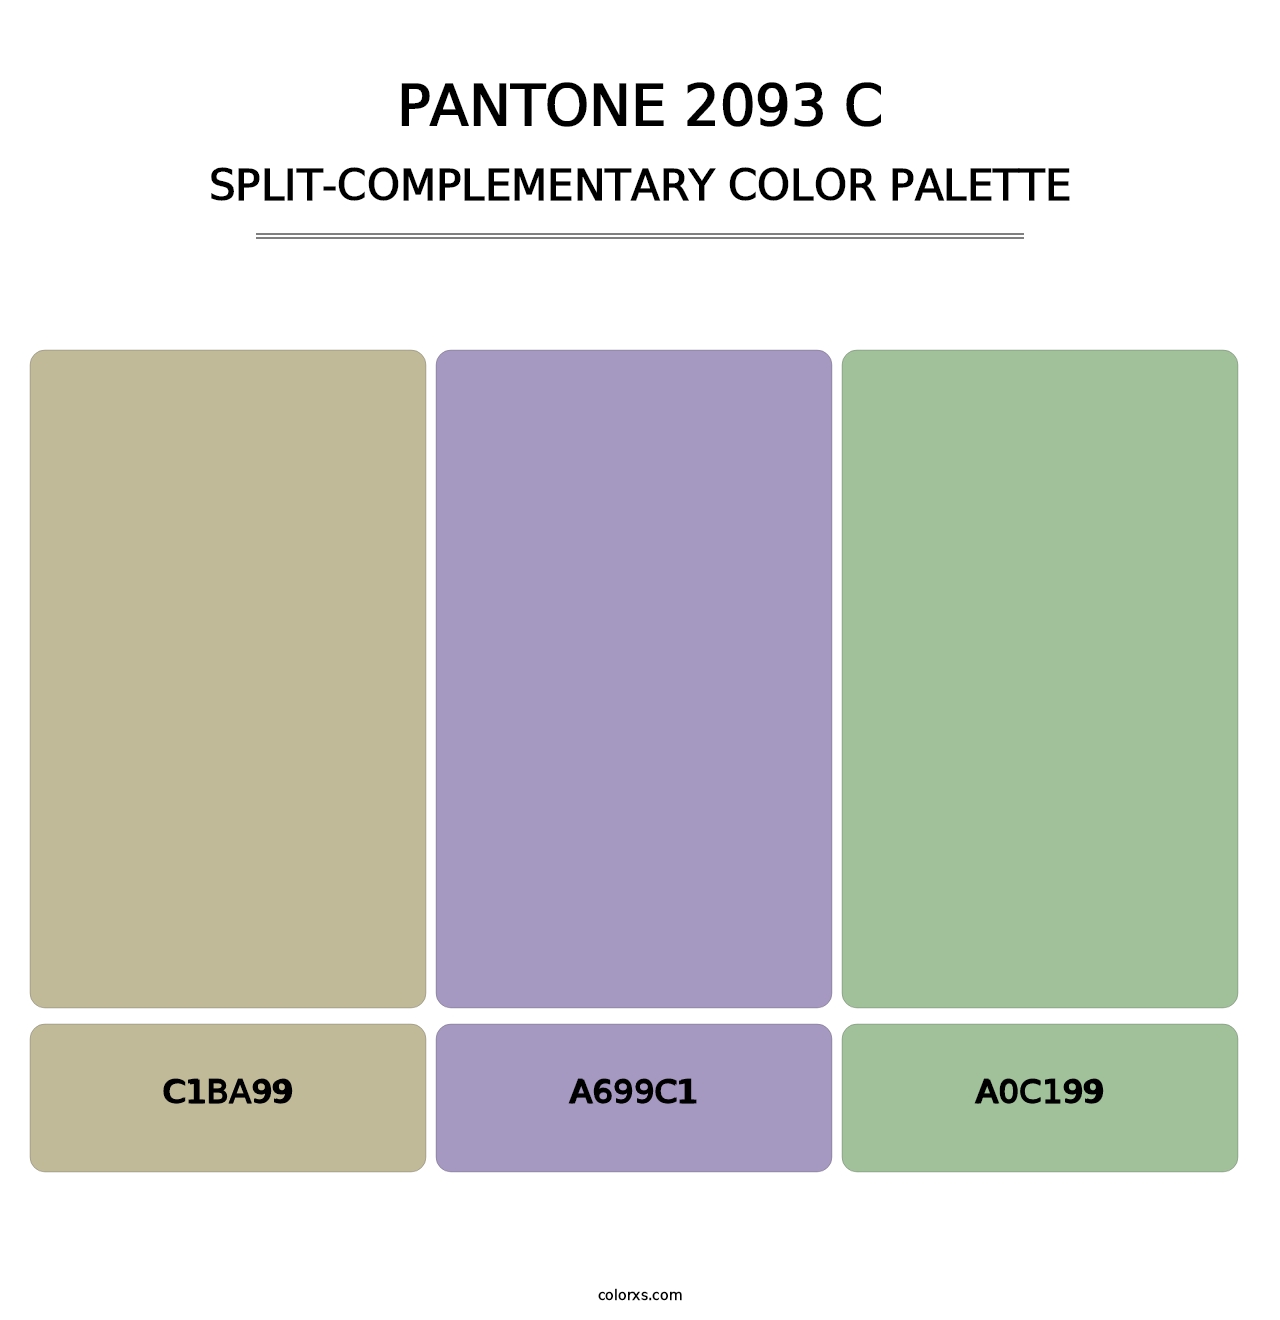 PANTONE 2093 C - Split-Complementary Color Palette